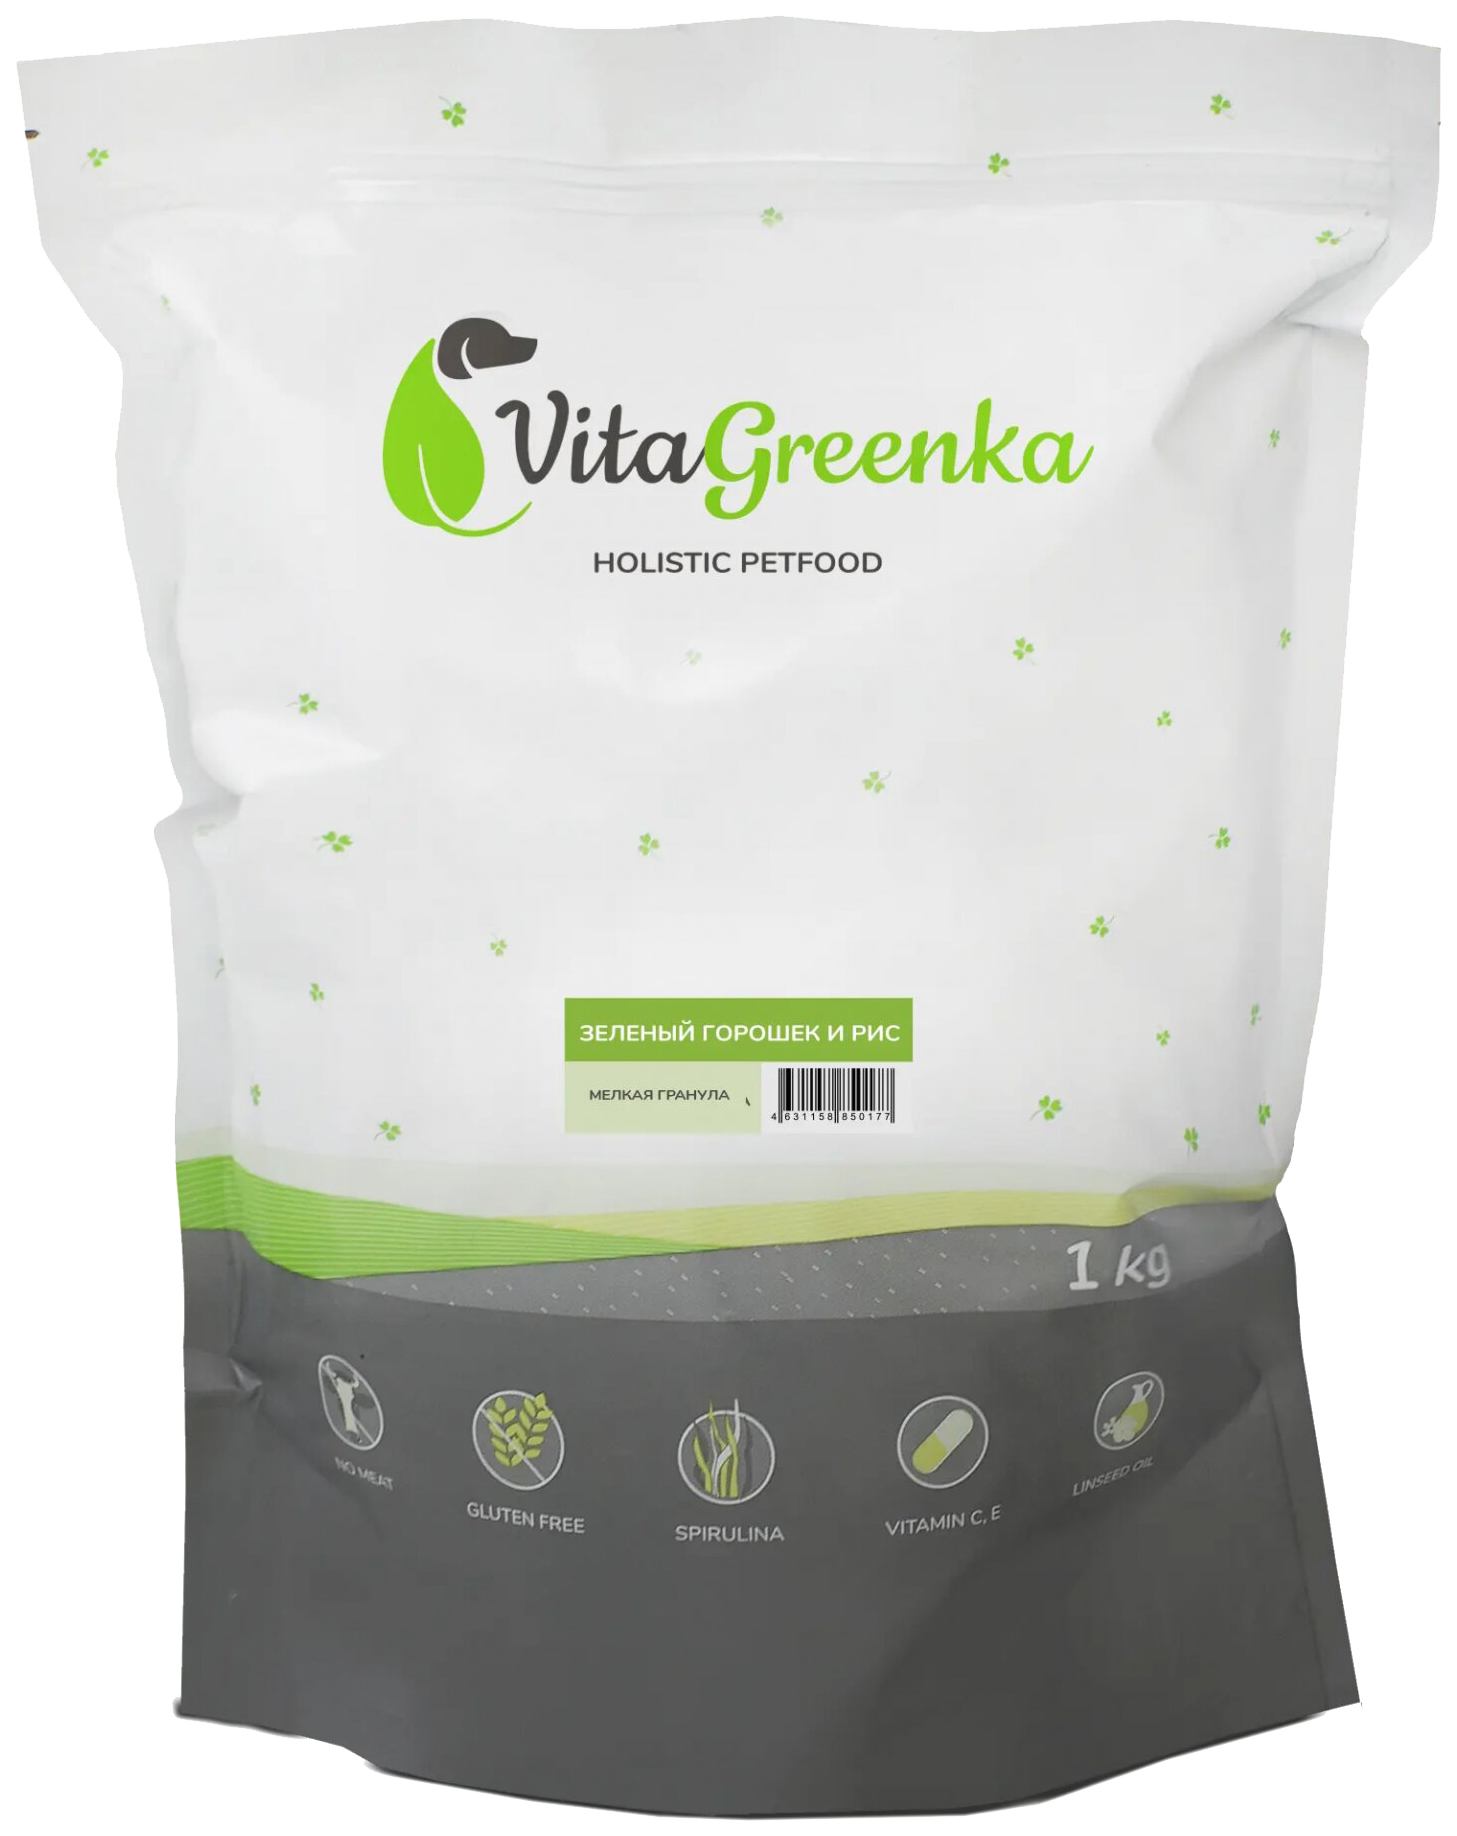 Сухой корм для собак VitaGreenka, зеленый горошек и рис, 2,5 кг